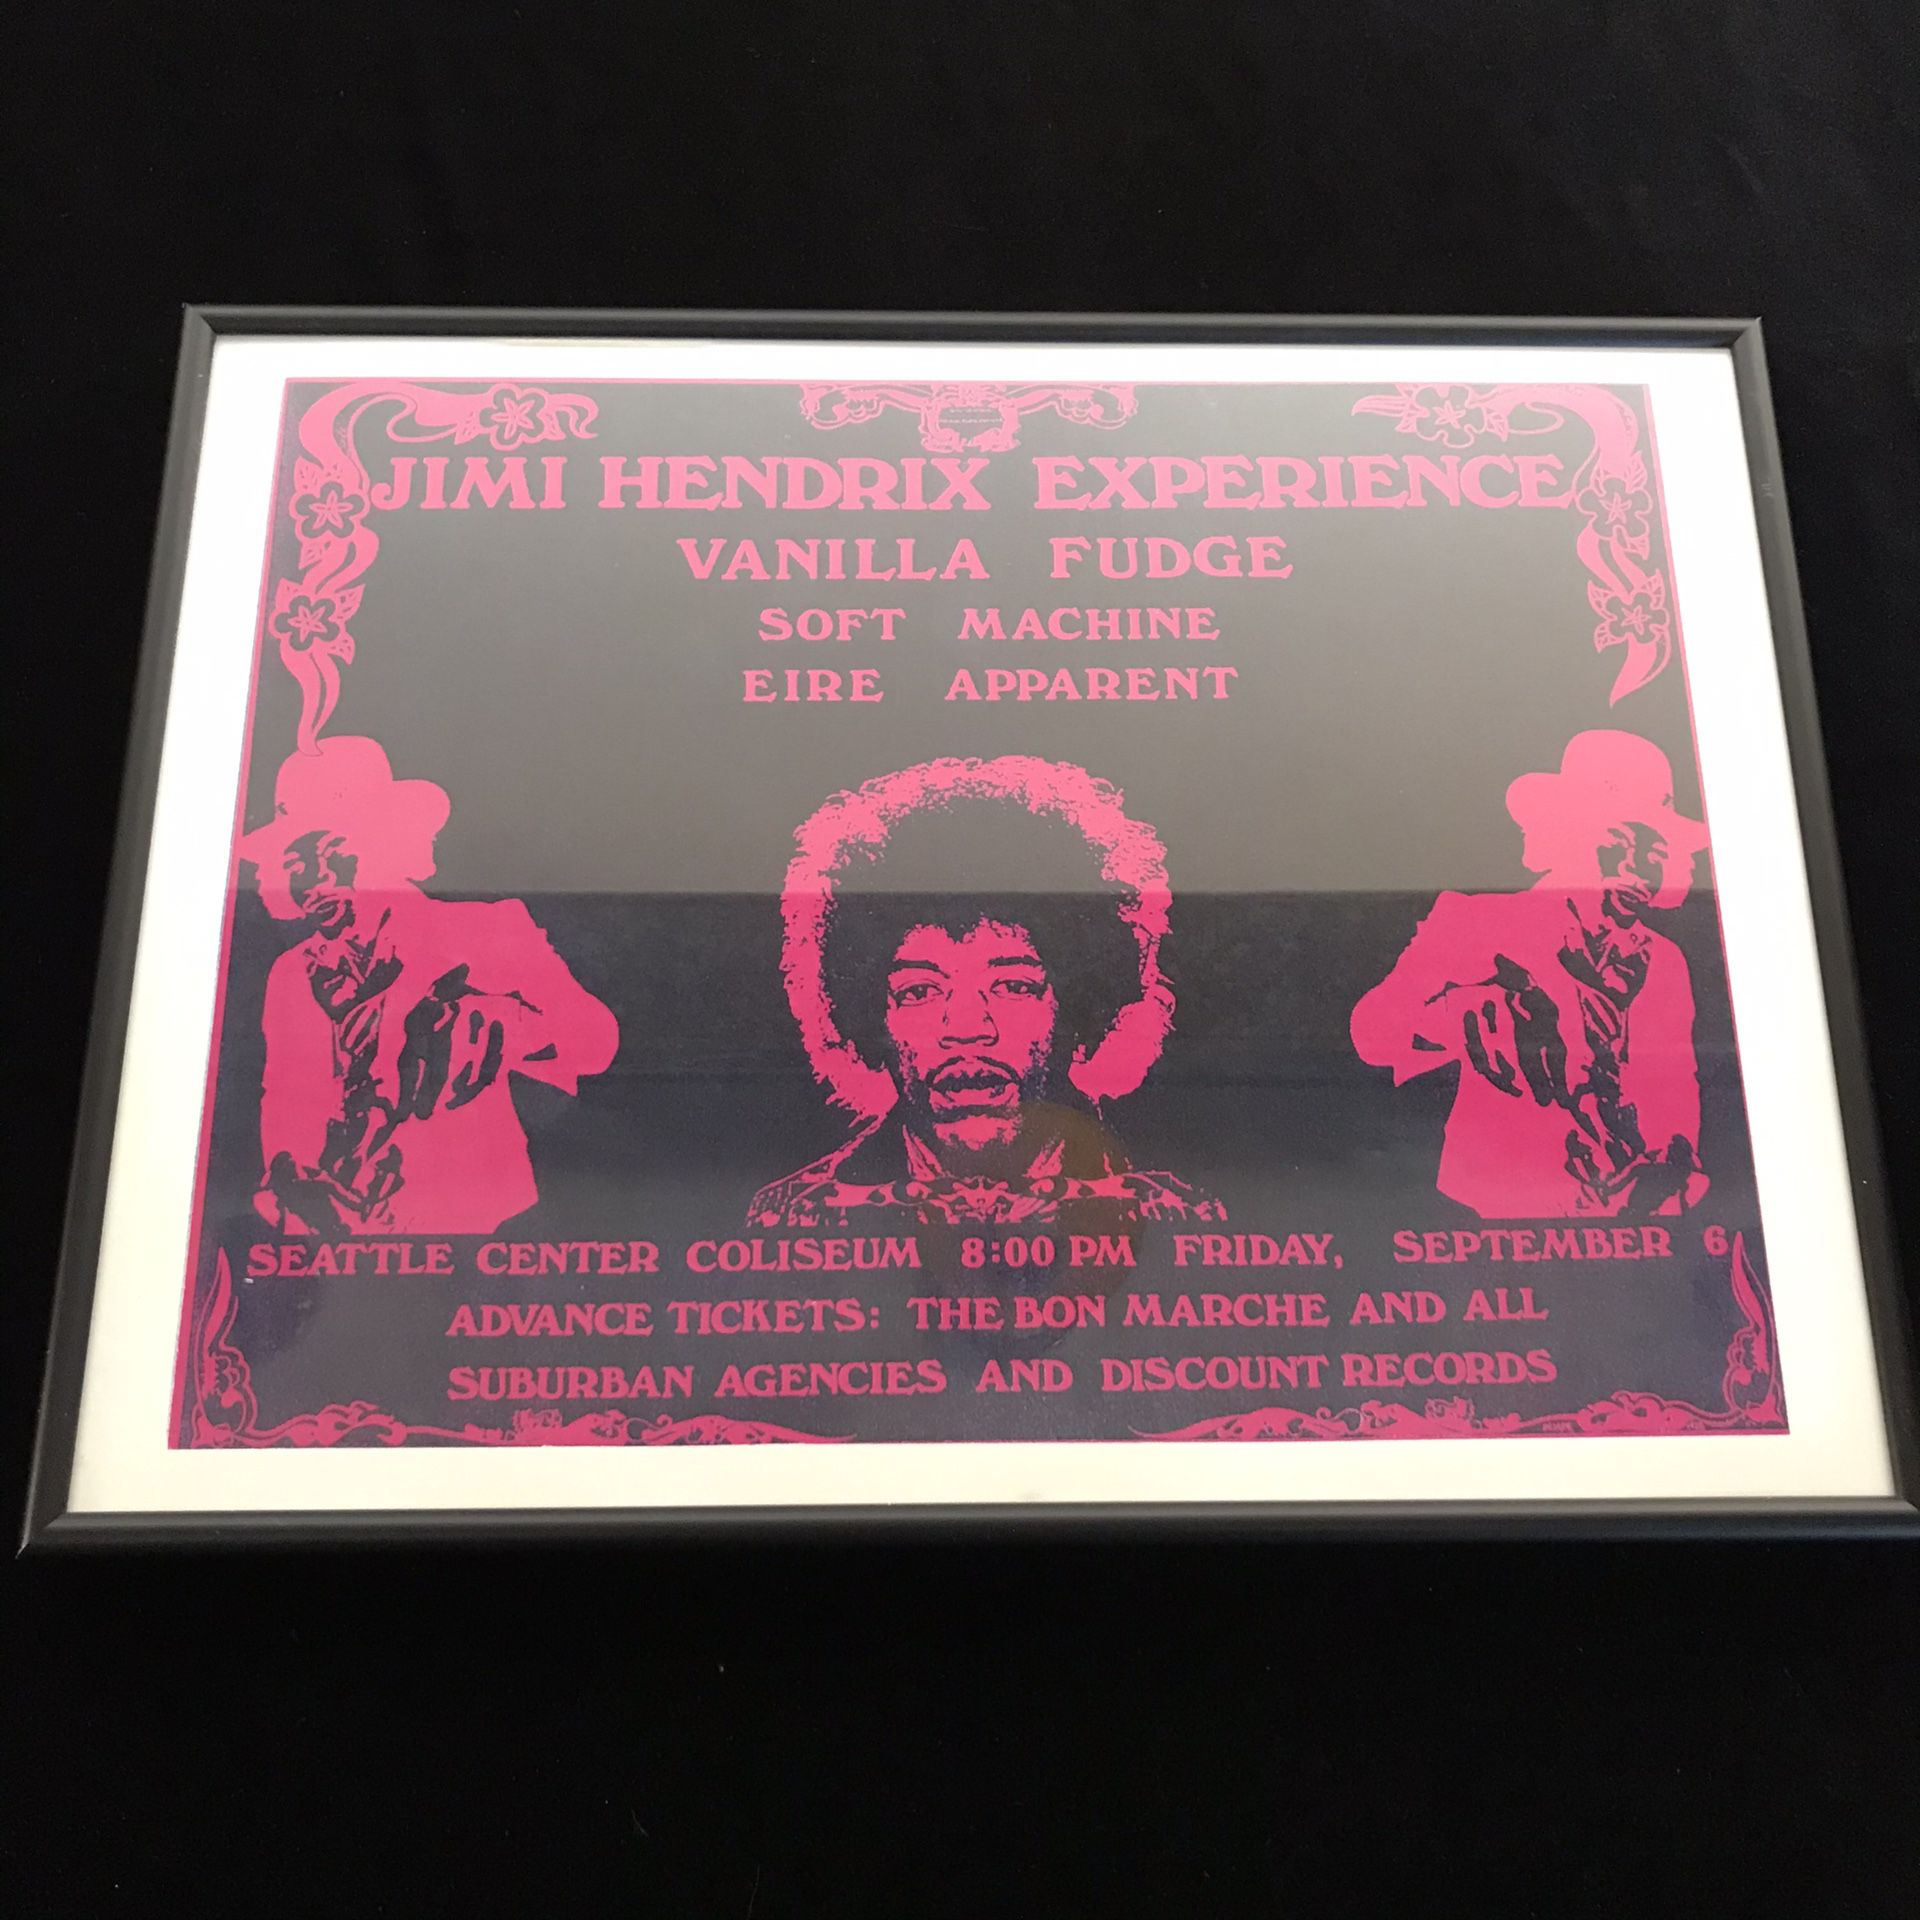 Jimi Hendrix Experience - Seattle Center Coliseum Concert Poster - Framed Art Reprint